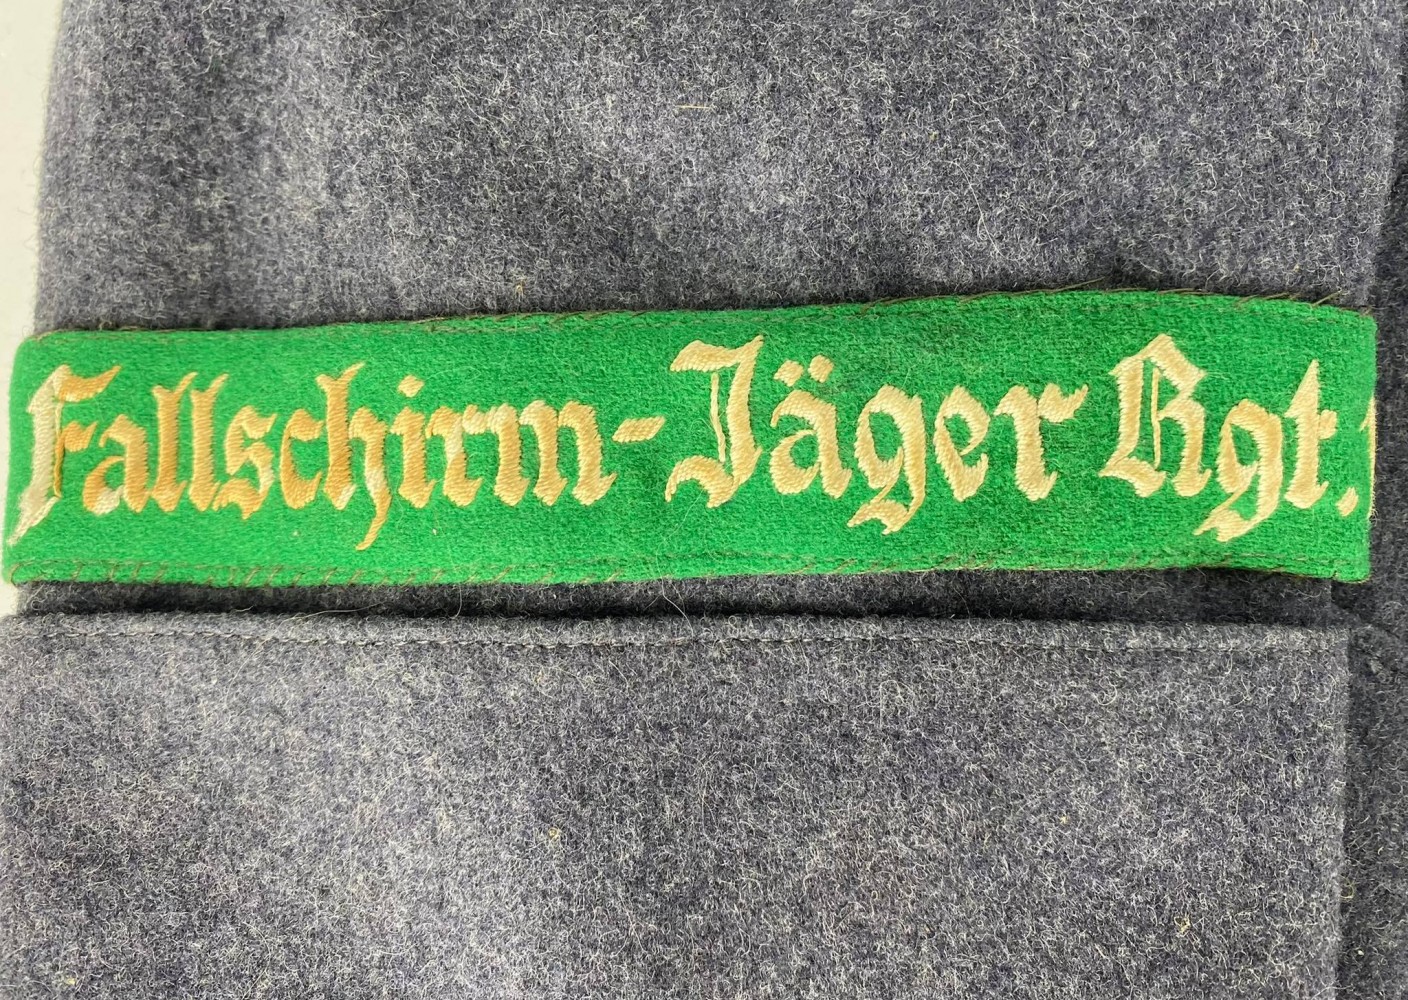 Luftwaffe Fallschirm-Jager Regiment 1 Obergefreite Tunic - Luftwaffe Fallschirm-Jager Regiment 1 Obergefreite Tunic: German Uniforms